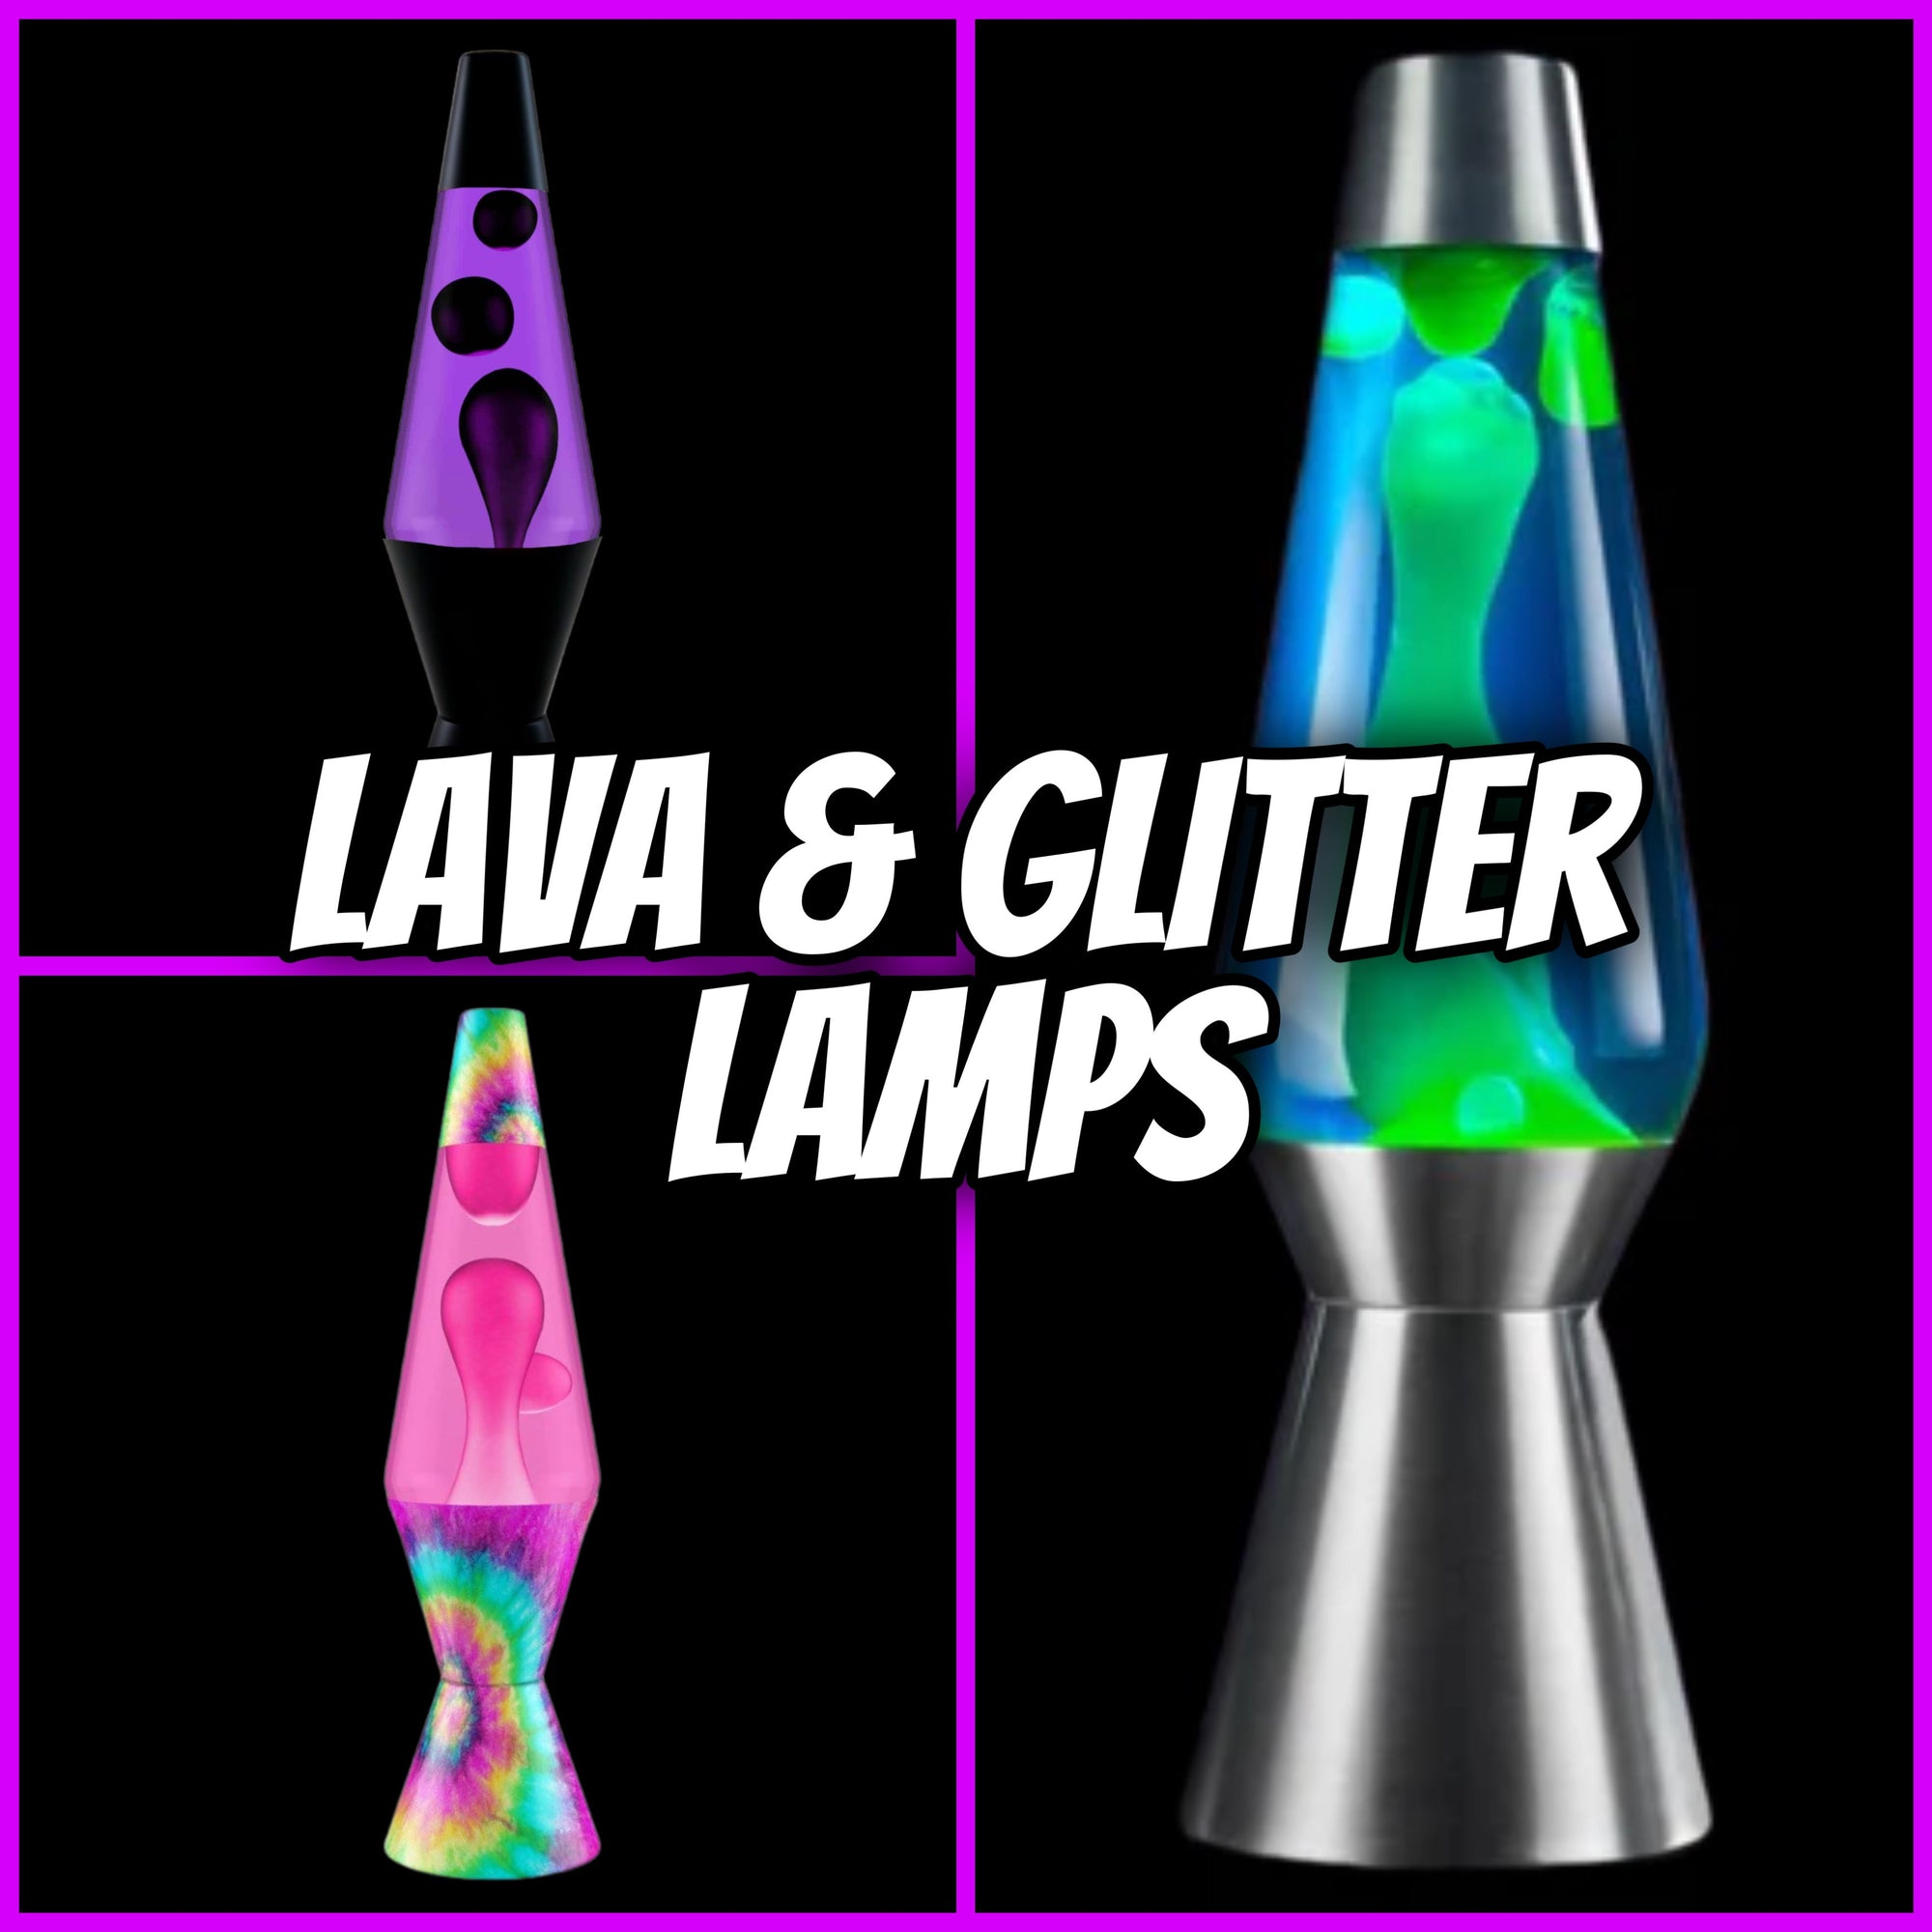 Lava & Glitter Lamps